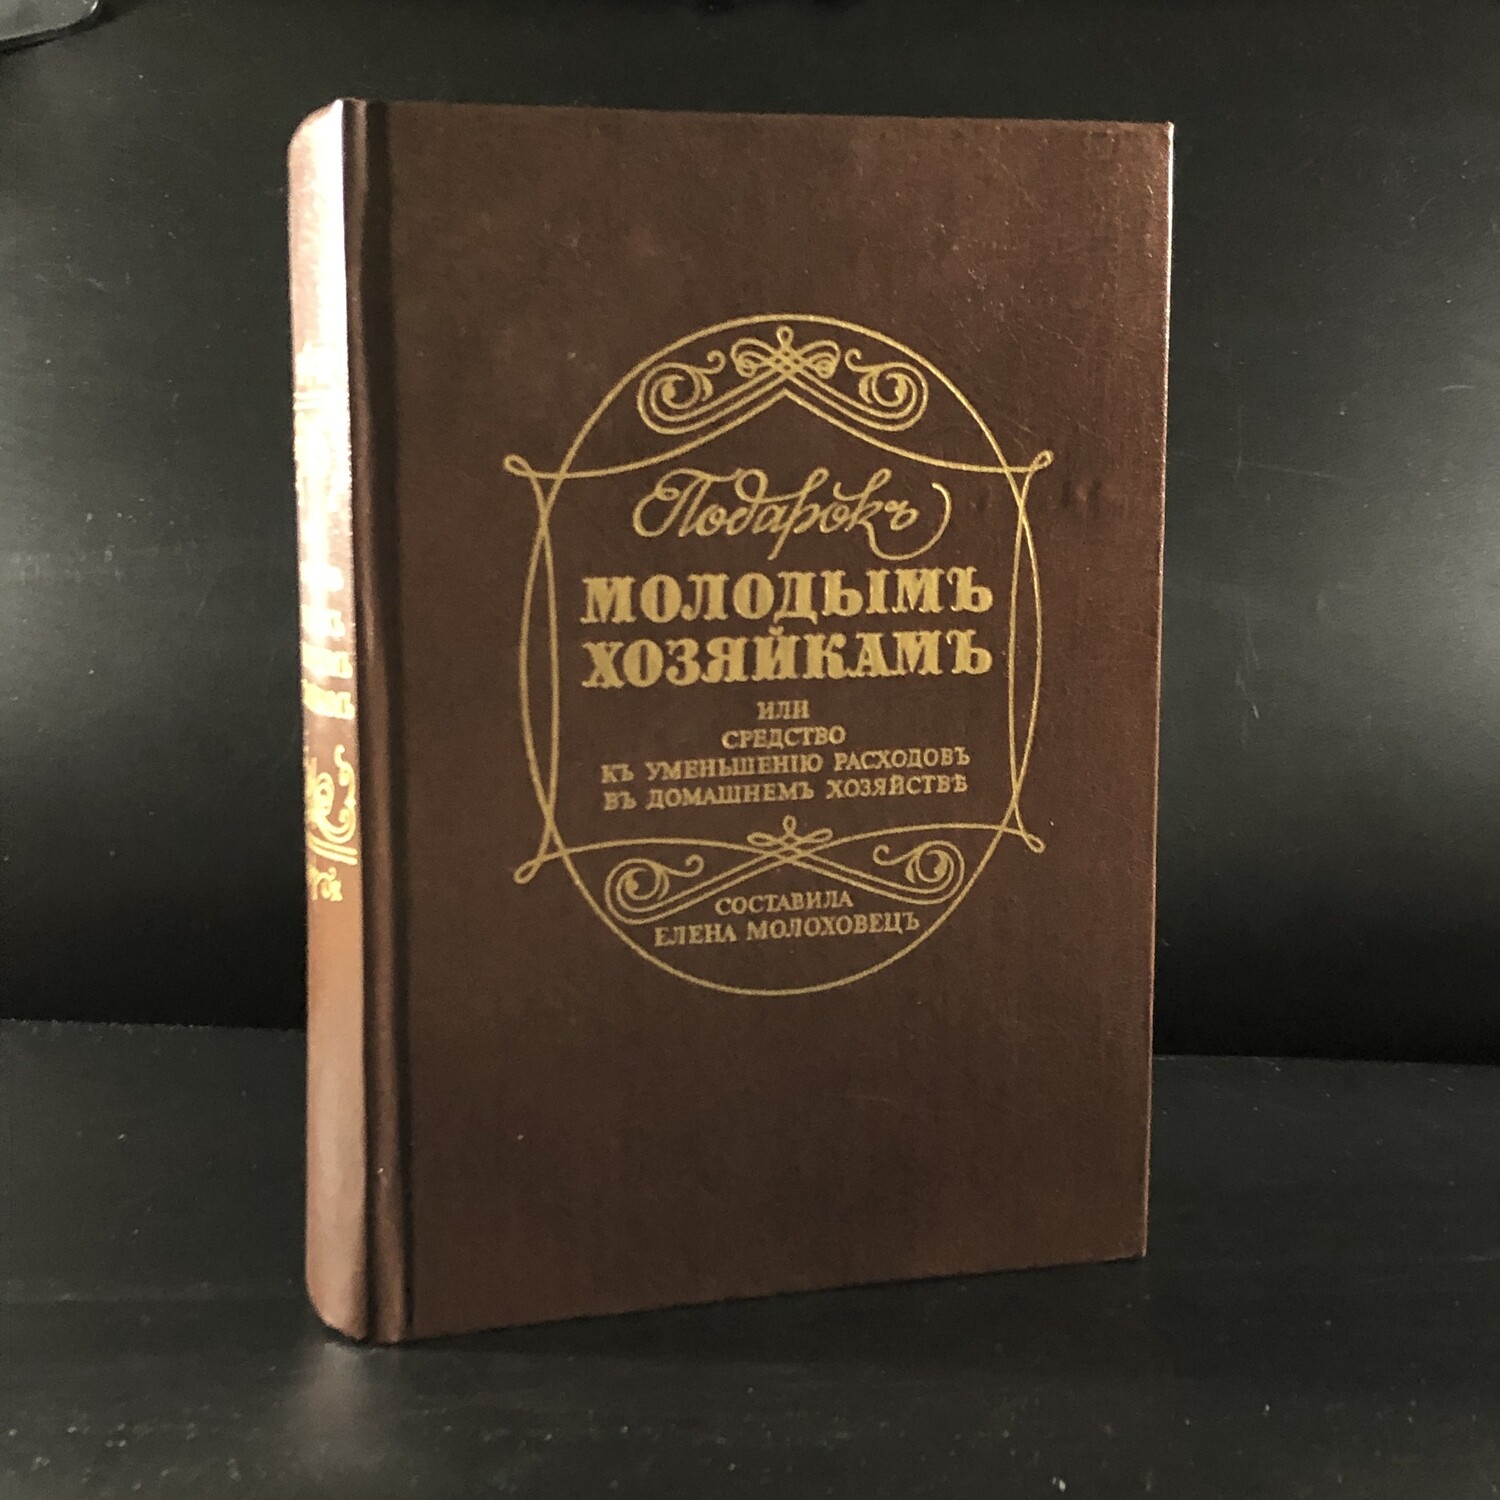 В книге елены молоховец подарок молодым. Молоховец подарок молодым хозяйкам репринт. "Подарок молодым хозяйкам" 1861 "первое издание".